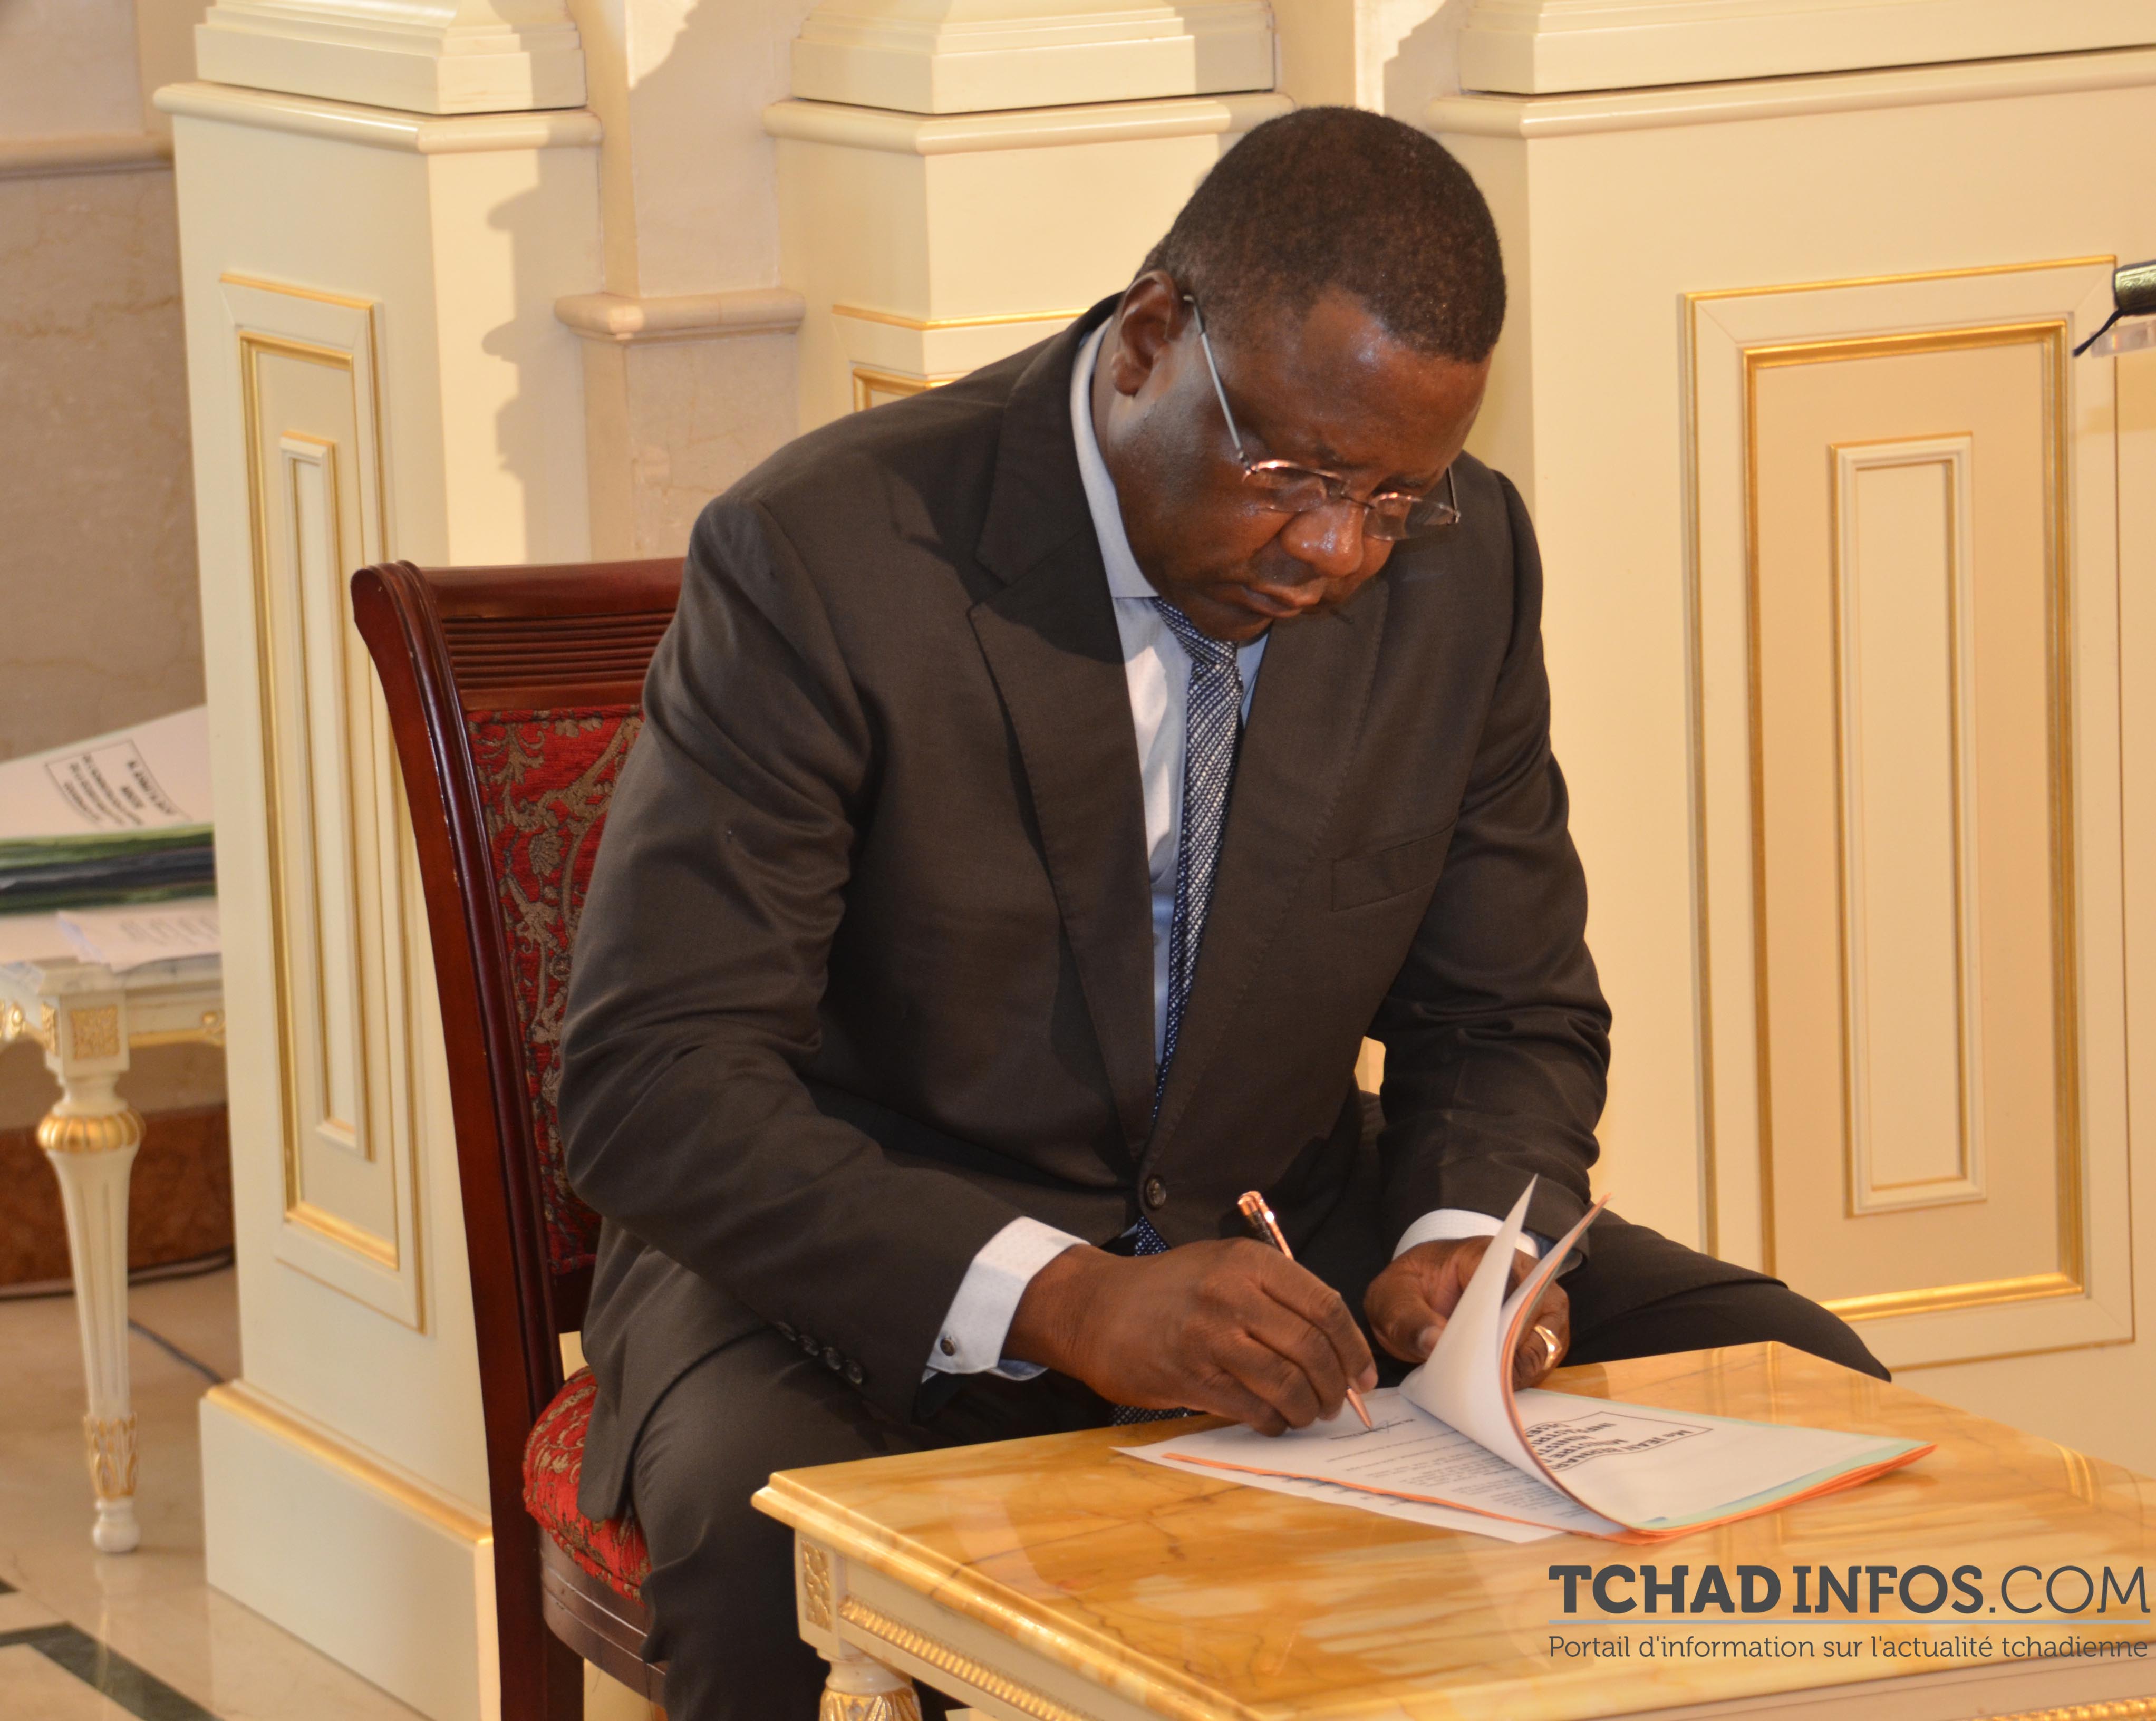 Tchad : 10 choses à savoir sur la charte déontologique gouvernementale de la 4e République